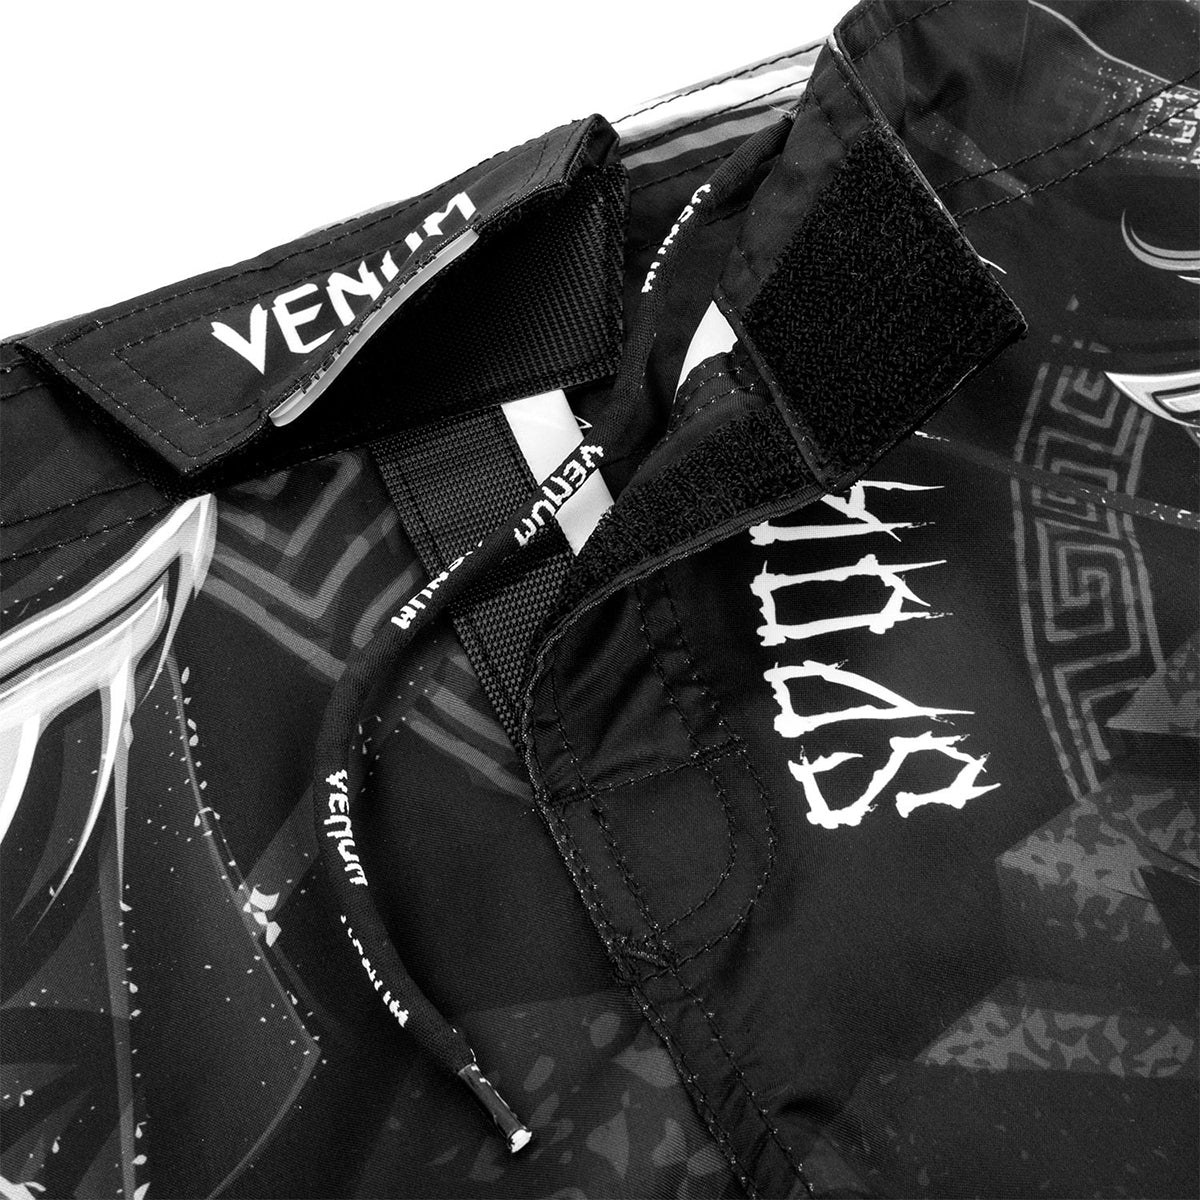 Venum Kids Gladiator MMA Fight Shorts - Black/White Venum